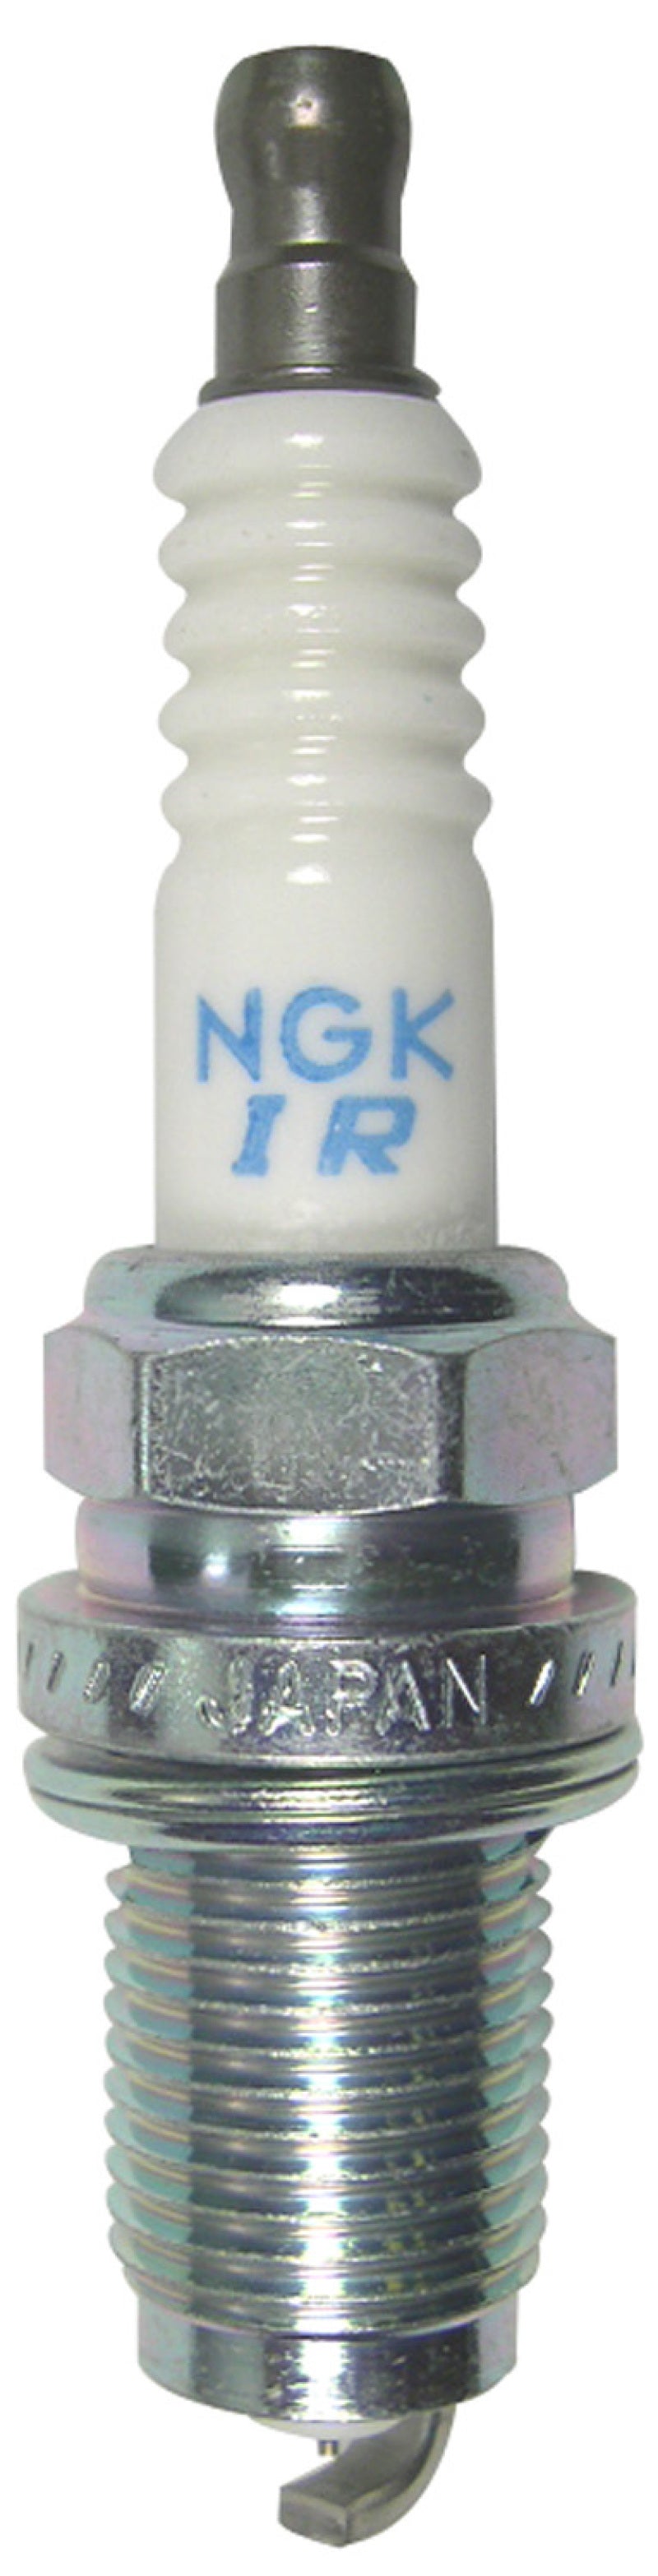 NGK Iridium/Platinum Spark Plug Box of 4 (IZFR6K-11) - eliteracefab.com